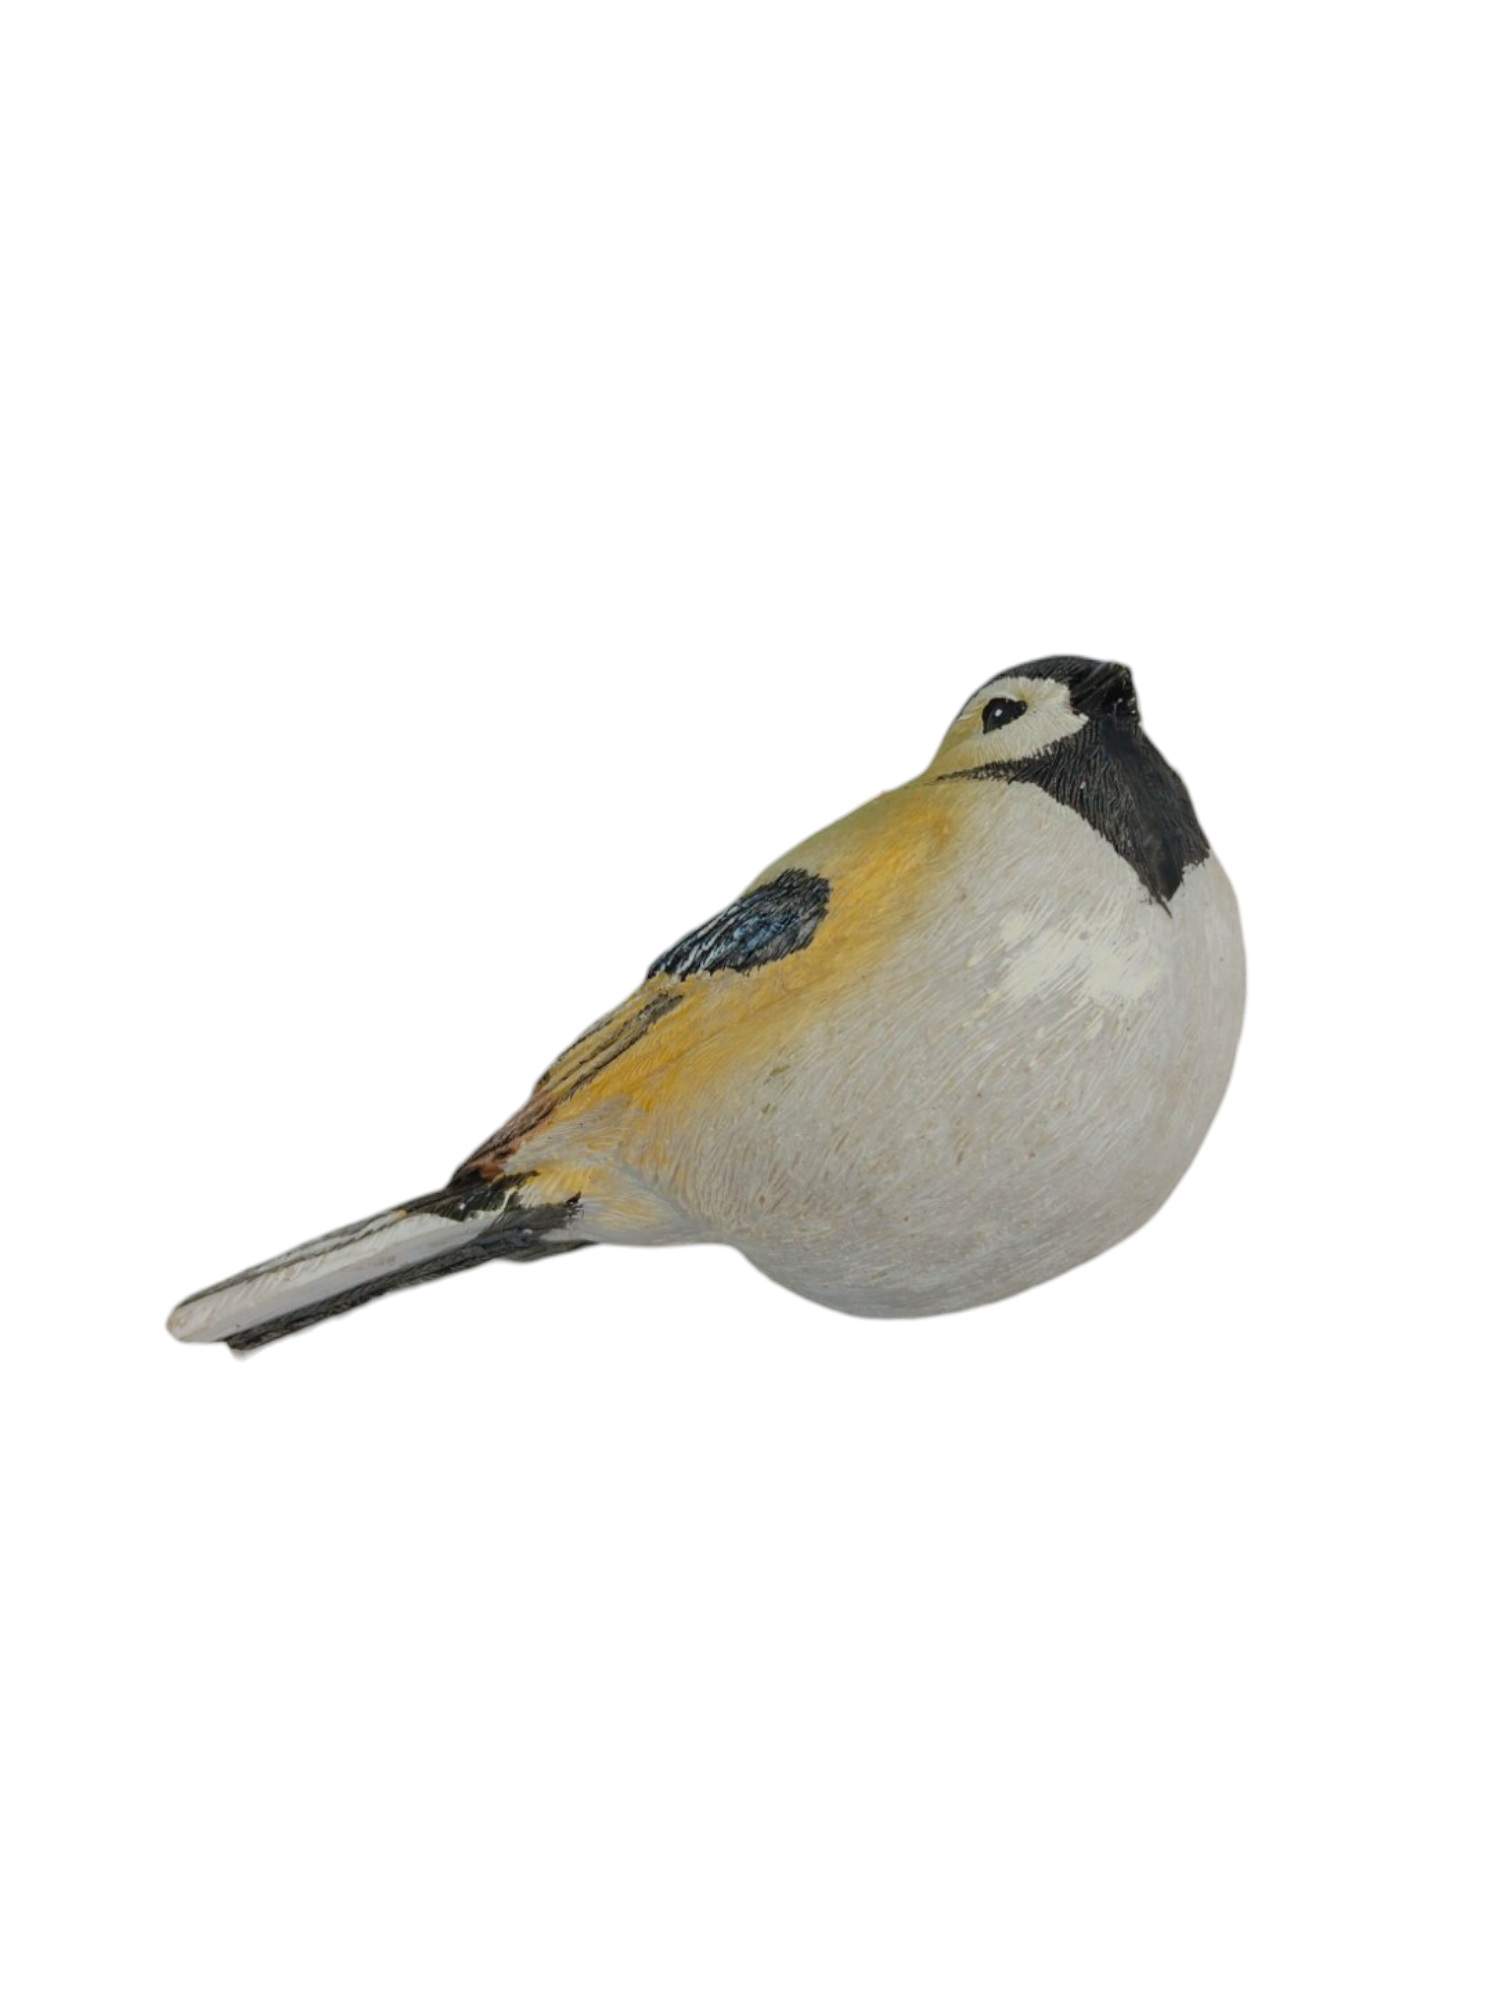 Ornament: 4.5" Chickadee Songbird